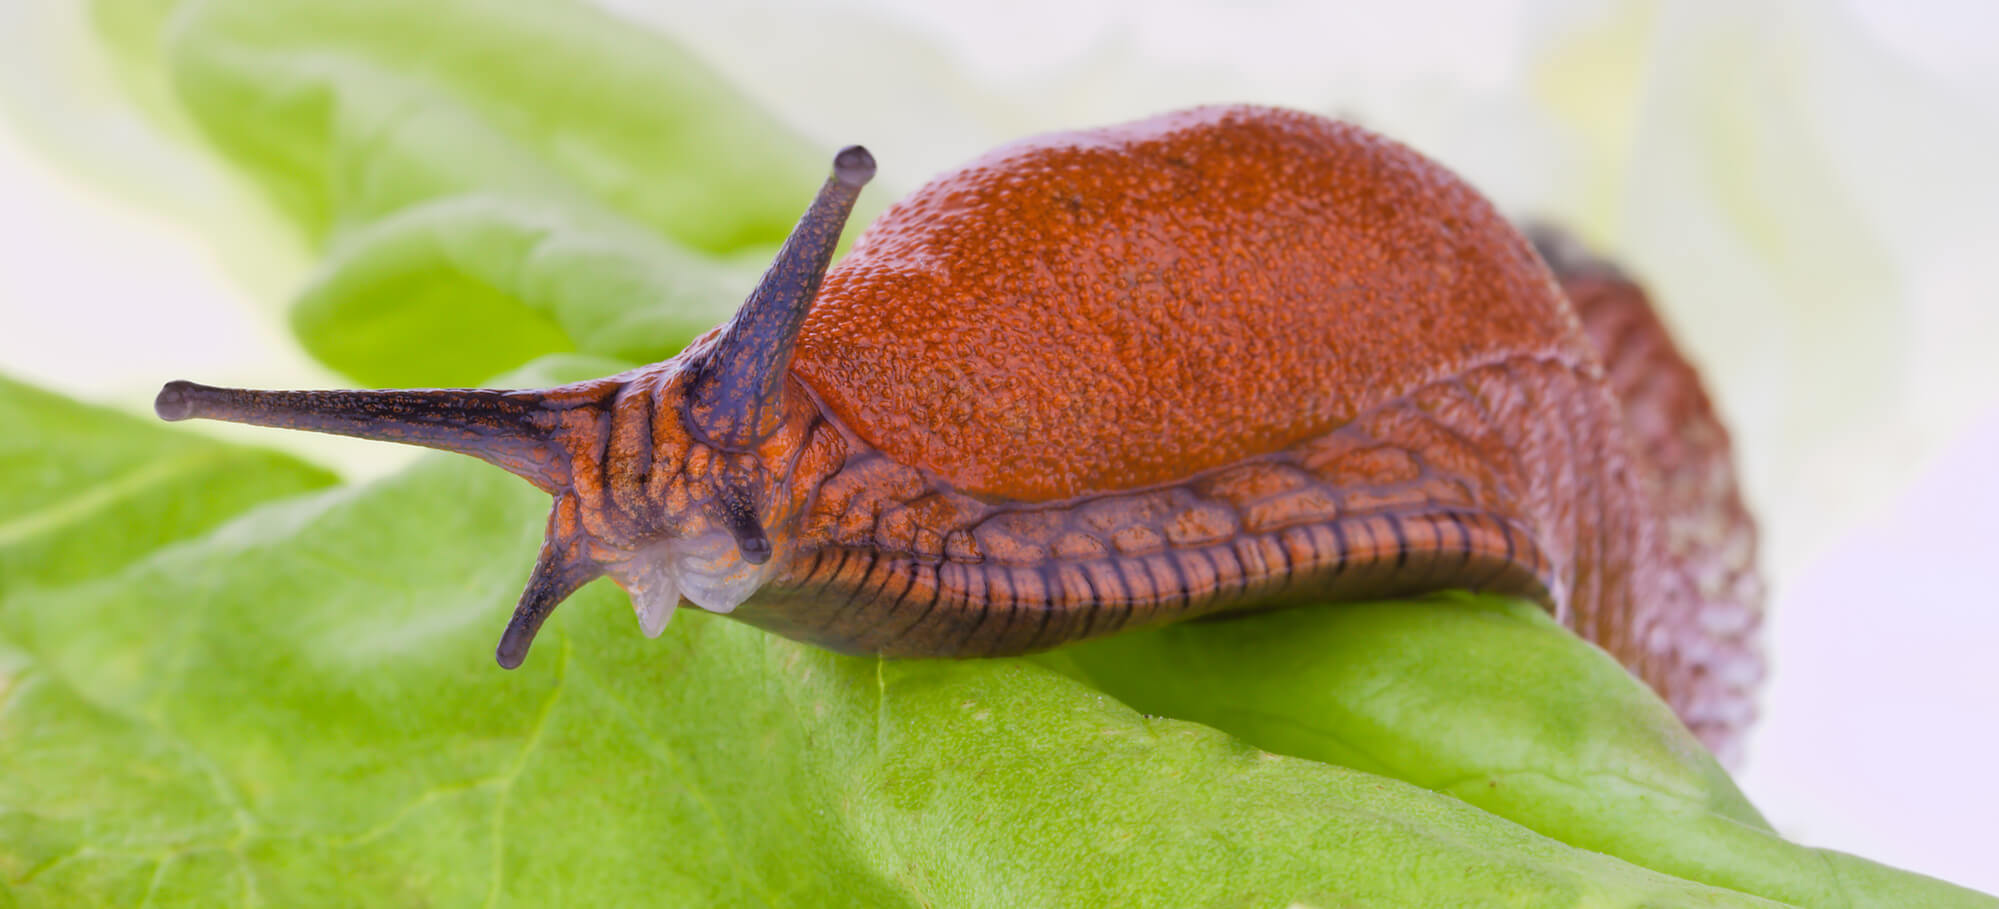 slimy brown slug on a leaf